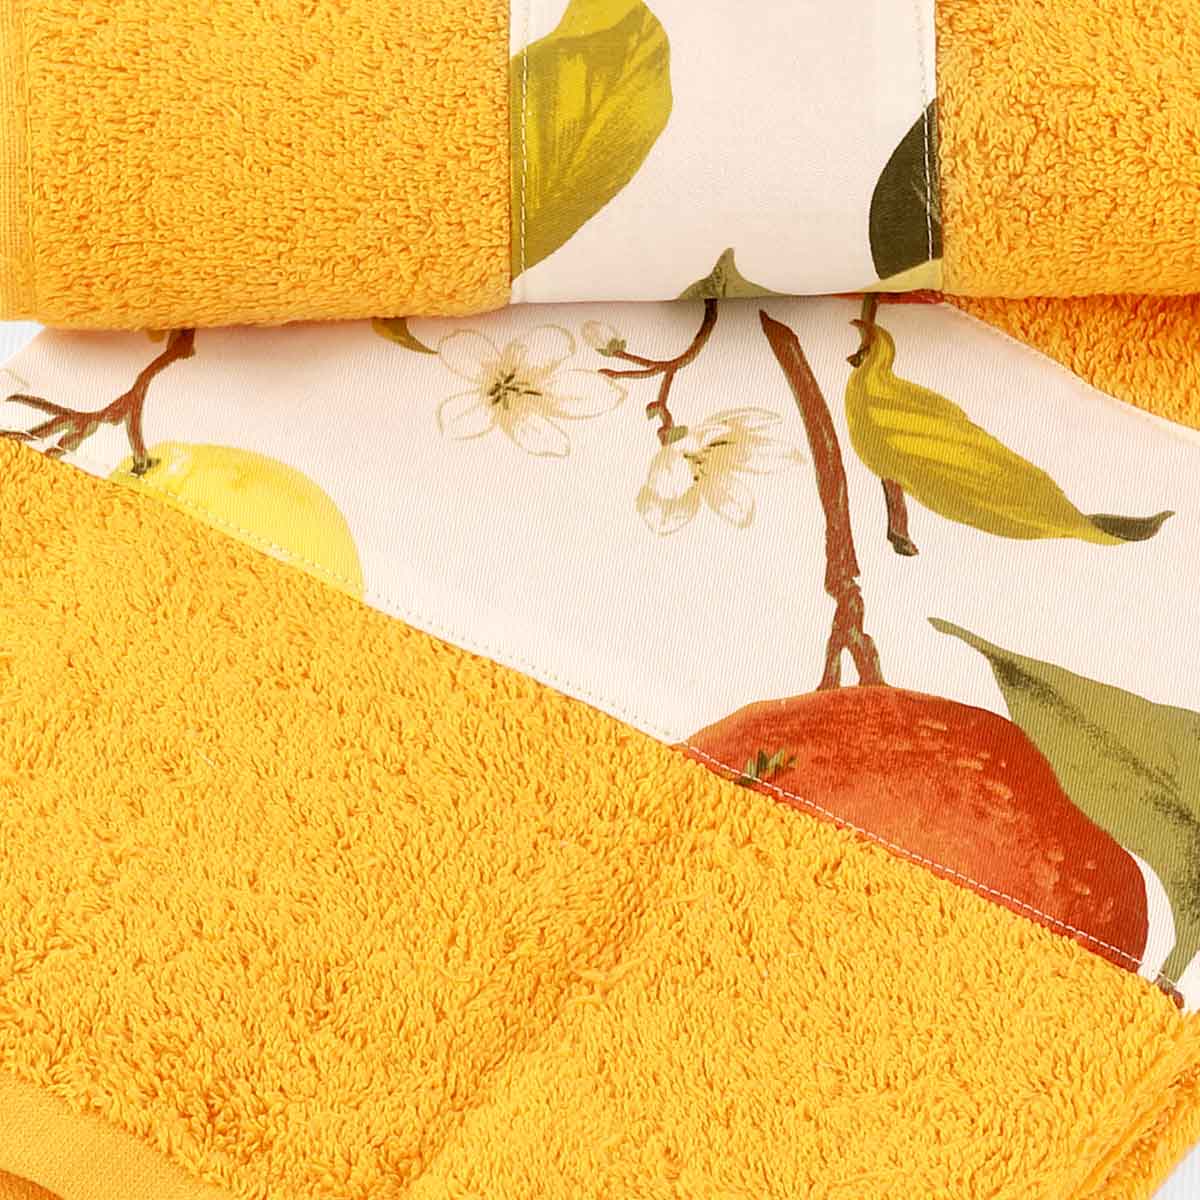 Asciugamani di colore arancio con balza agrumi di produzione italiana